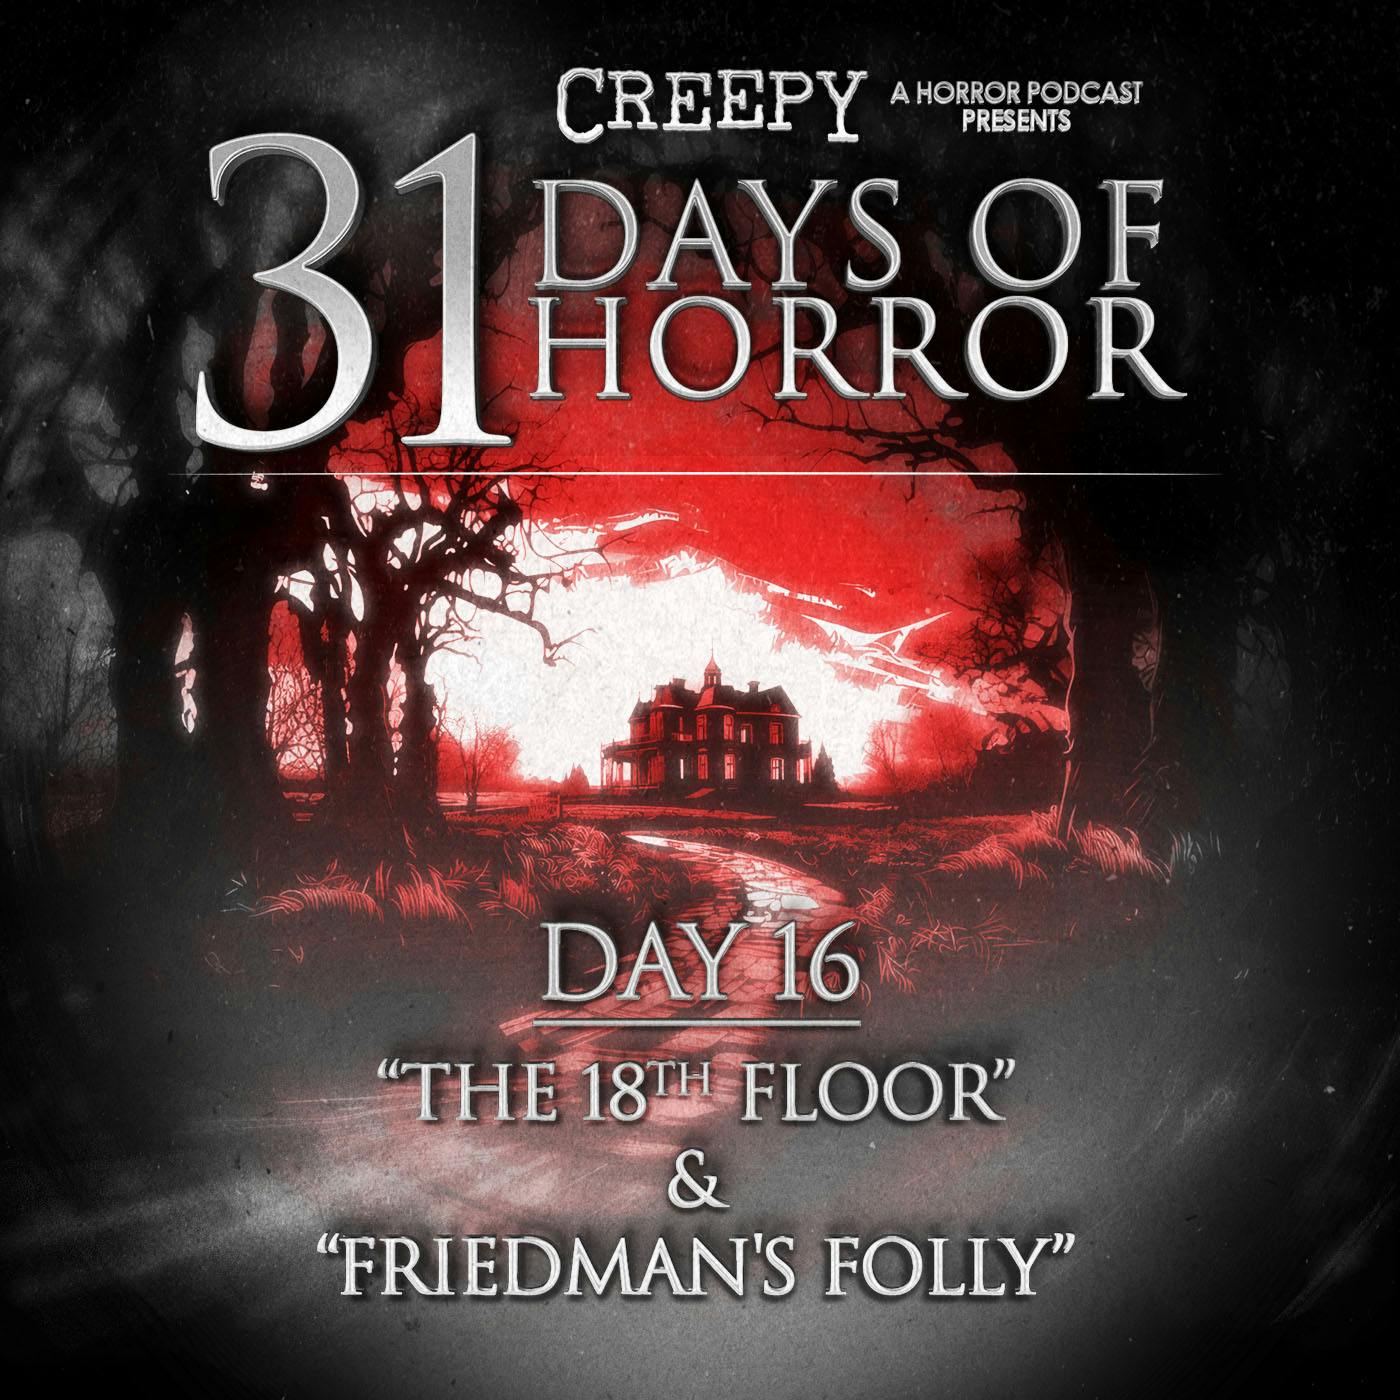 Day 16 - The 18th Floor & Friedman’s Folly